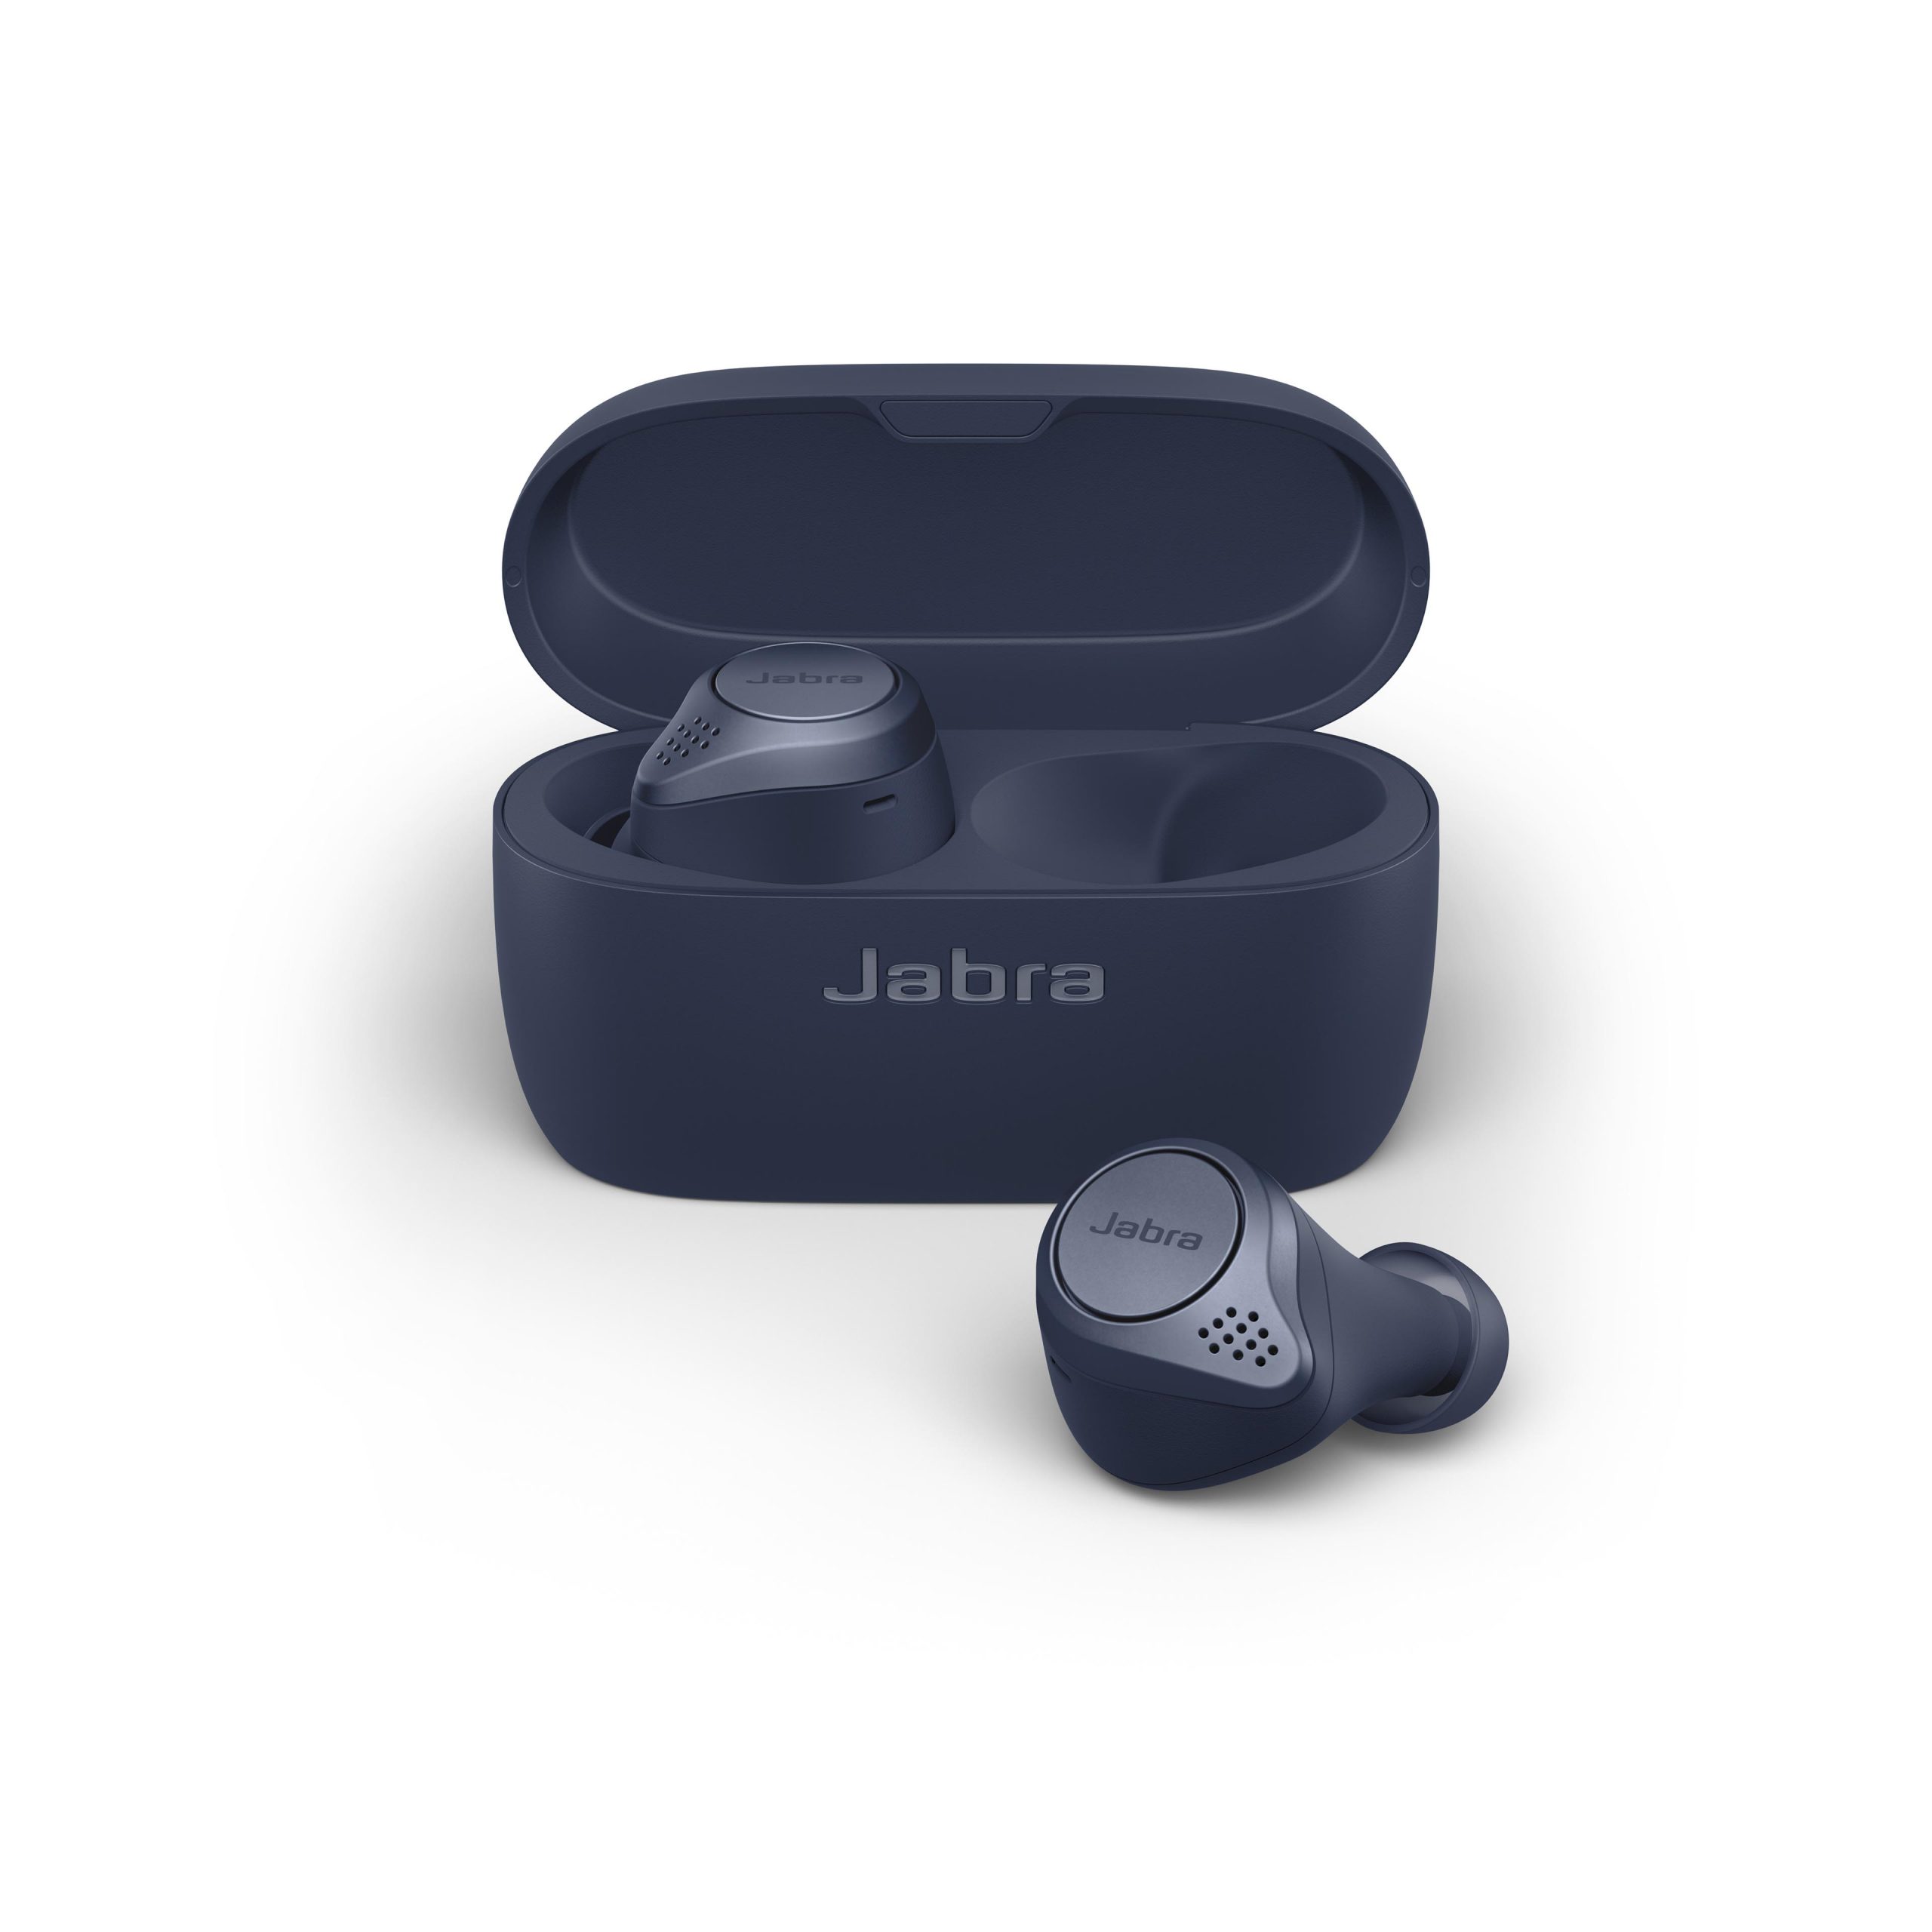 อาร์ทีบีฯ ตอกย้ำผู้นำตลาดหูฟัง True Wireless ส่งหูฟังสปอร์ต Jabra Elite Active 75t จัดเต็มคุณภาพ